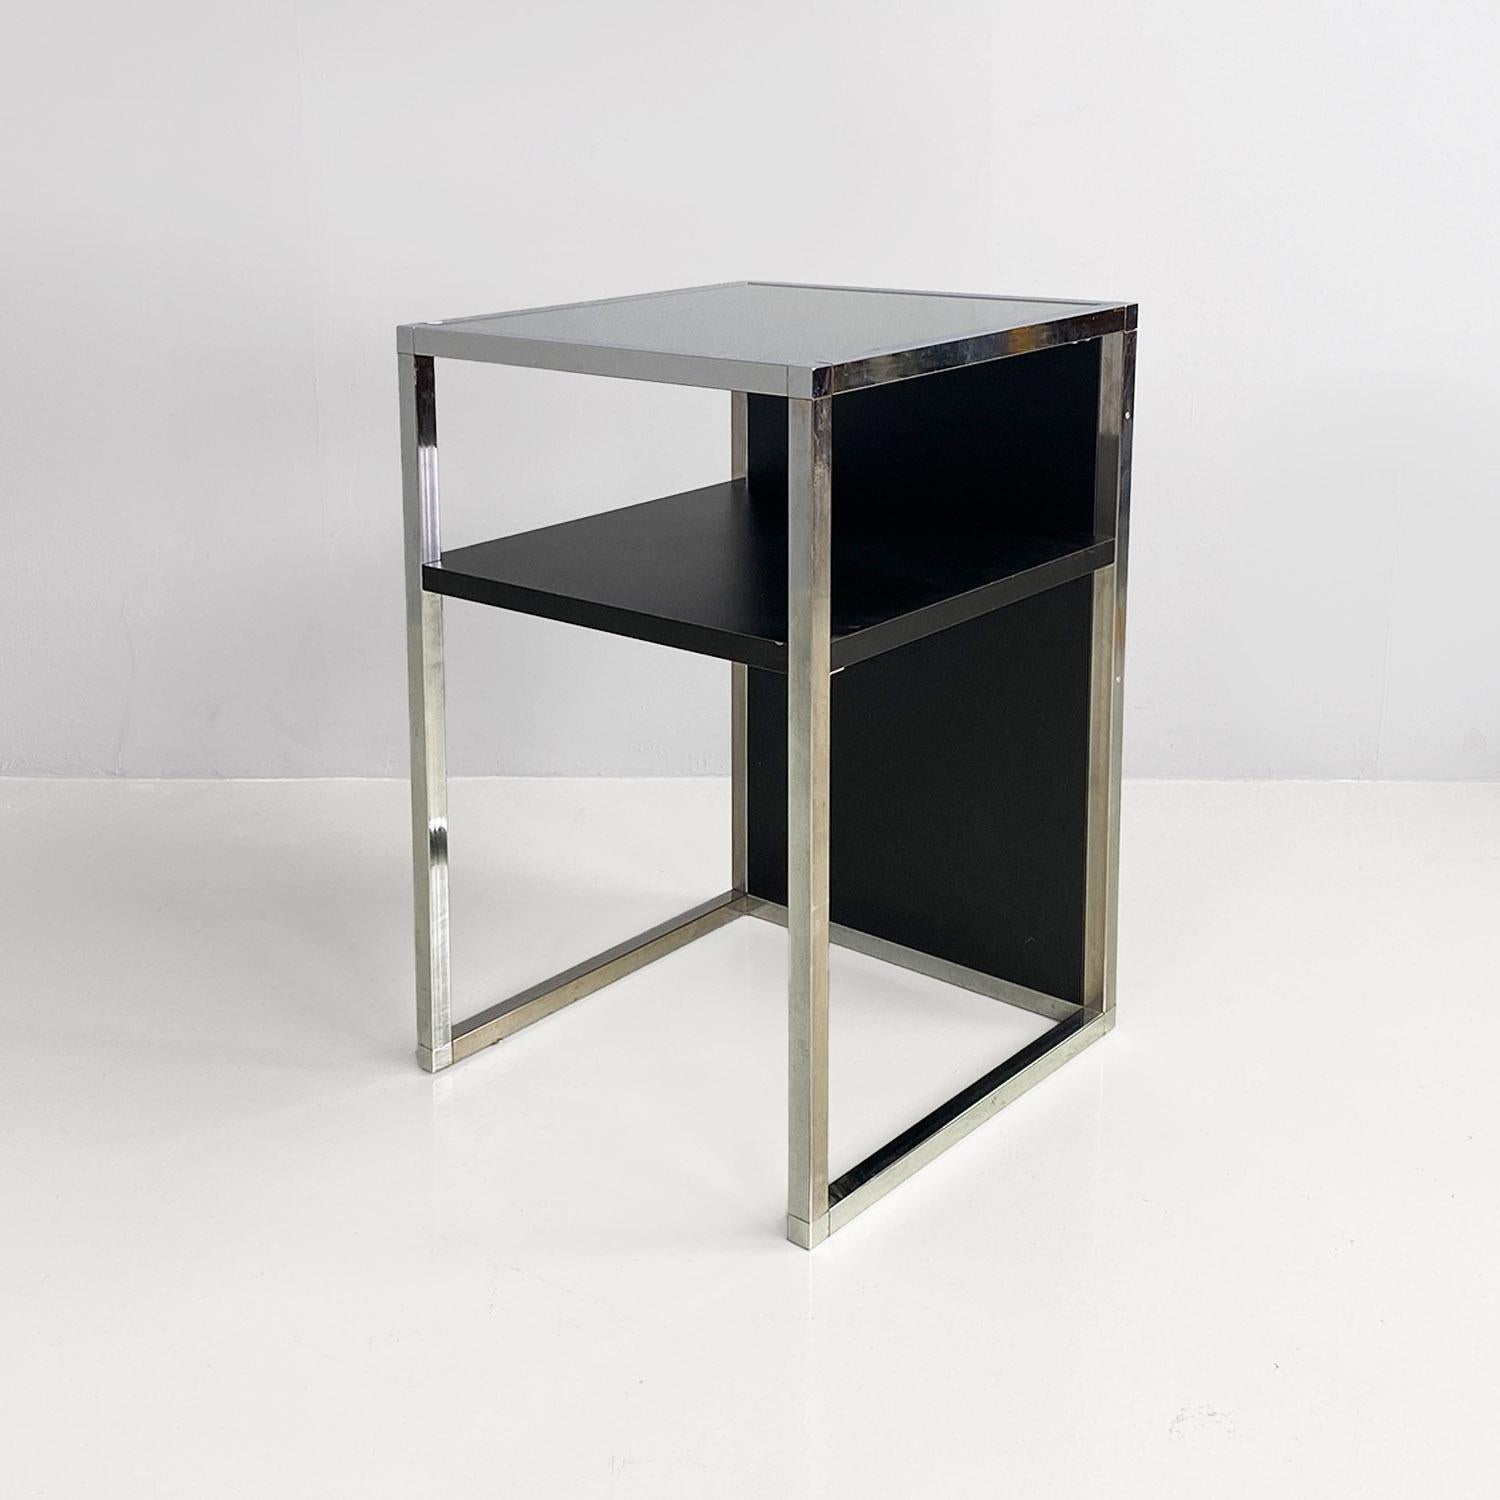 Moderner italienischer Tisch aus verchromtem Stahl, Holz und Glas für Stereoanlagen und Vinyls, 1990er Jahre.
Tisch für Stereoanlagen und zur Aufbewahrung von Schallplatten, mit einer Struktur aus verchromtem Stahl mit quadratischem Querschnitt,